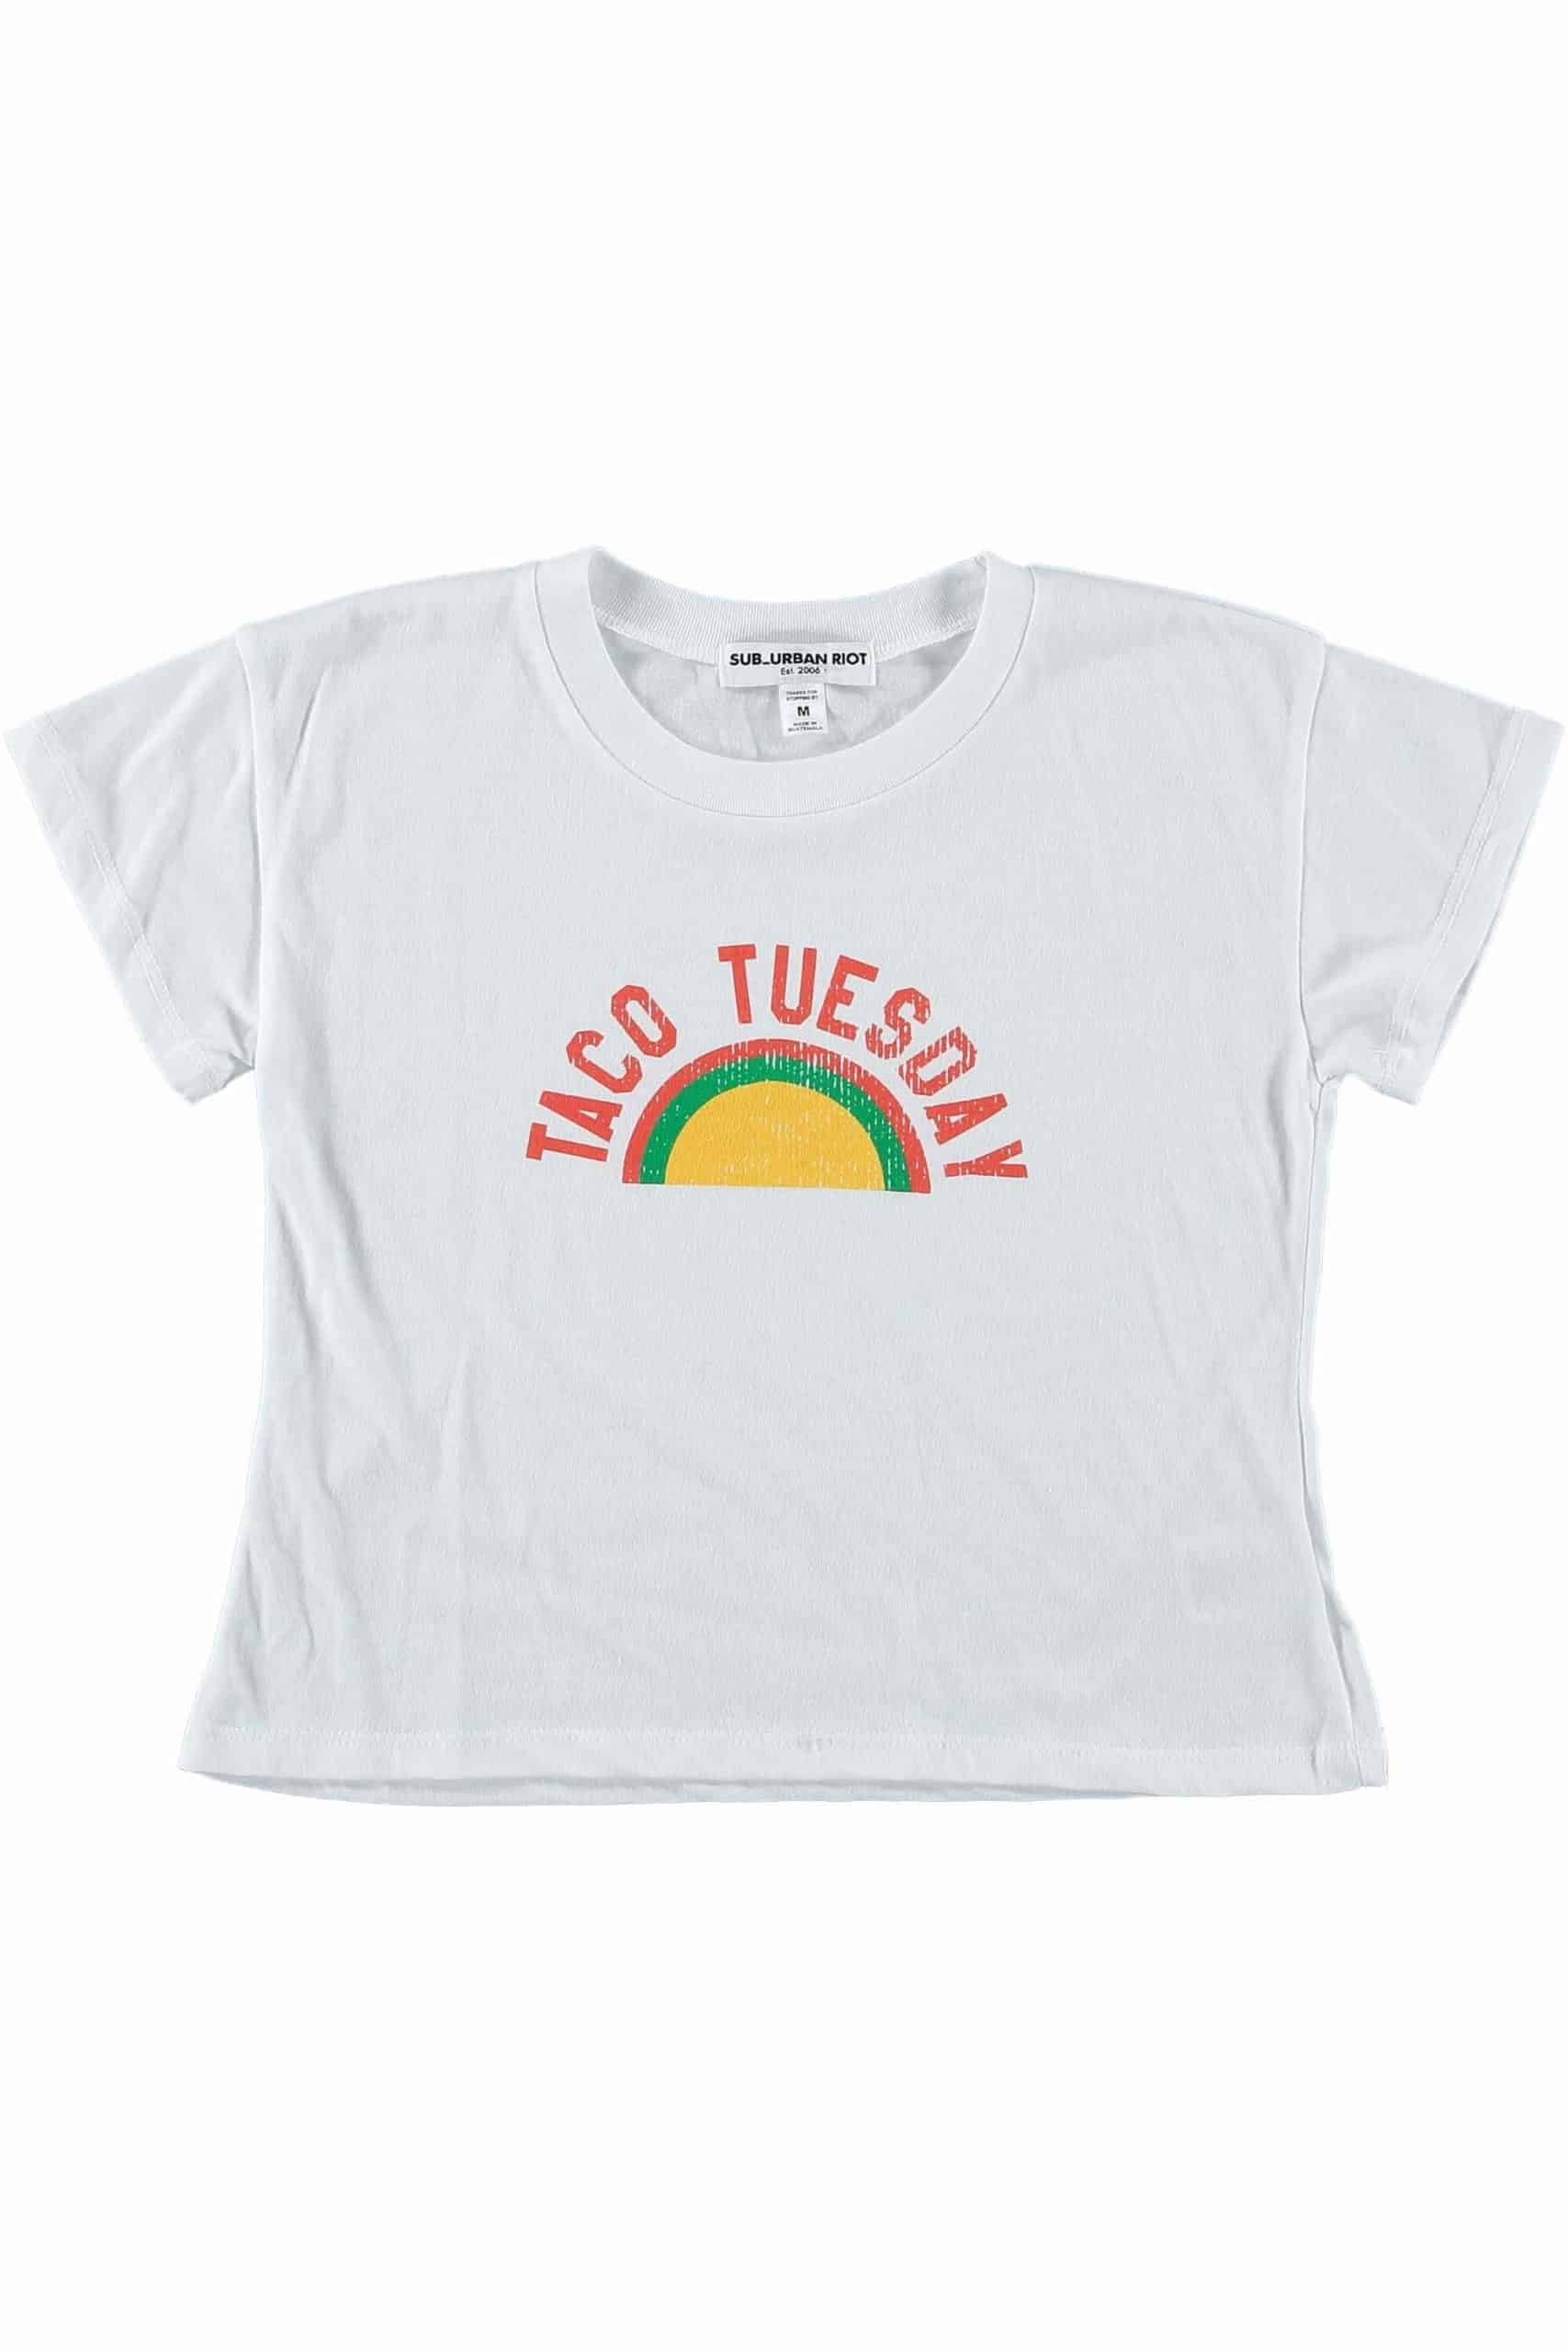 Taco Tuesday Kids Tee